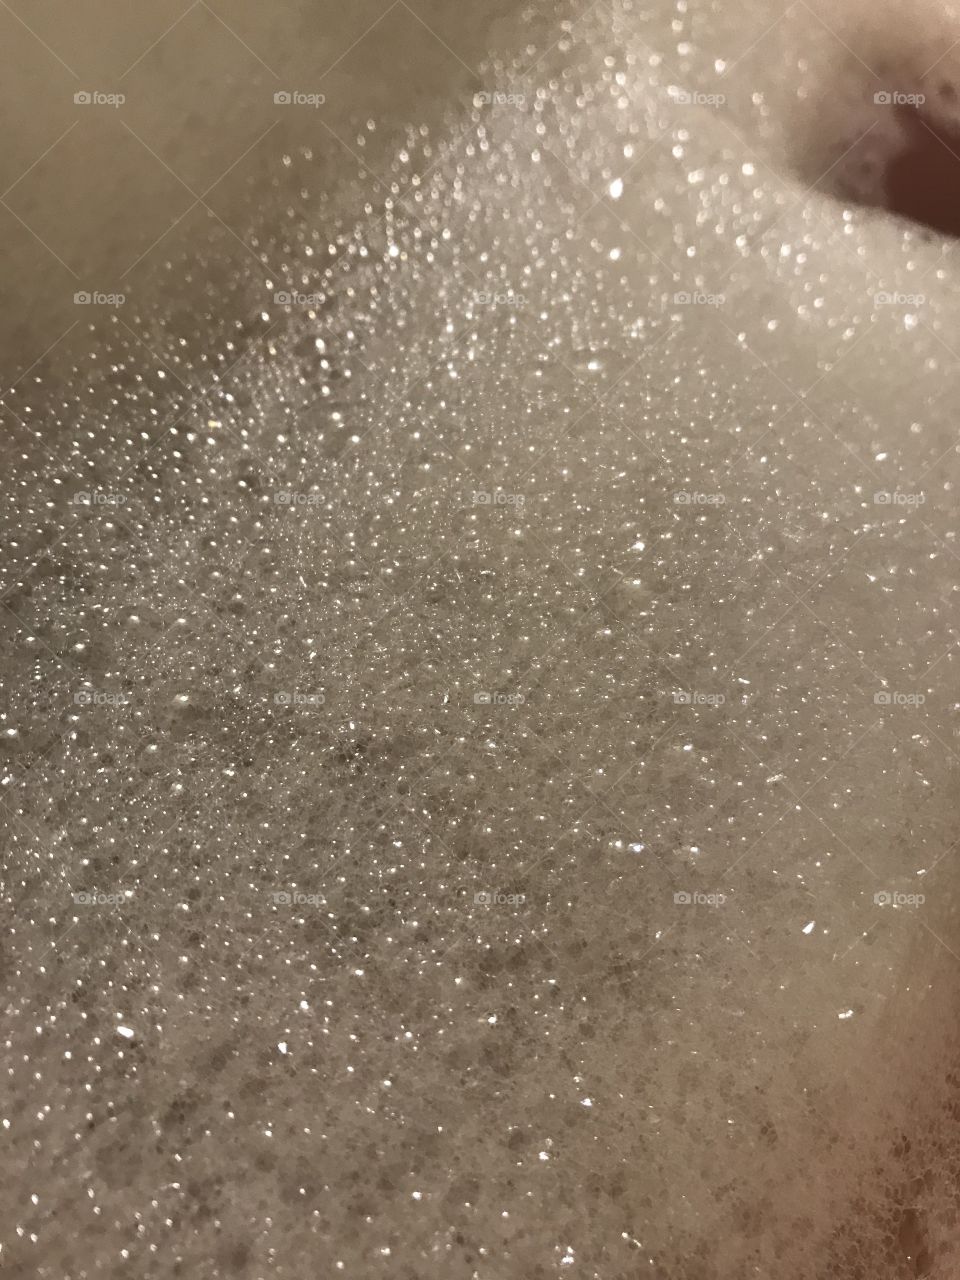  Bubbles